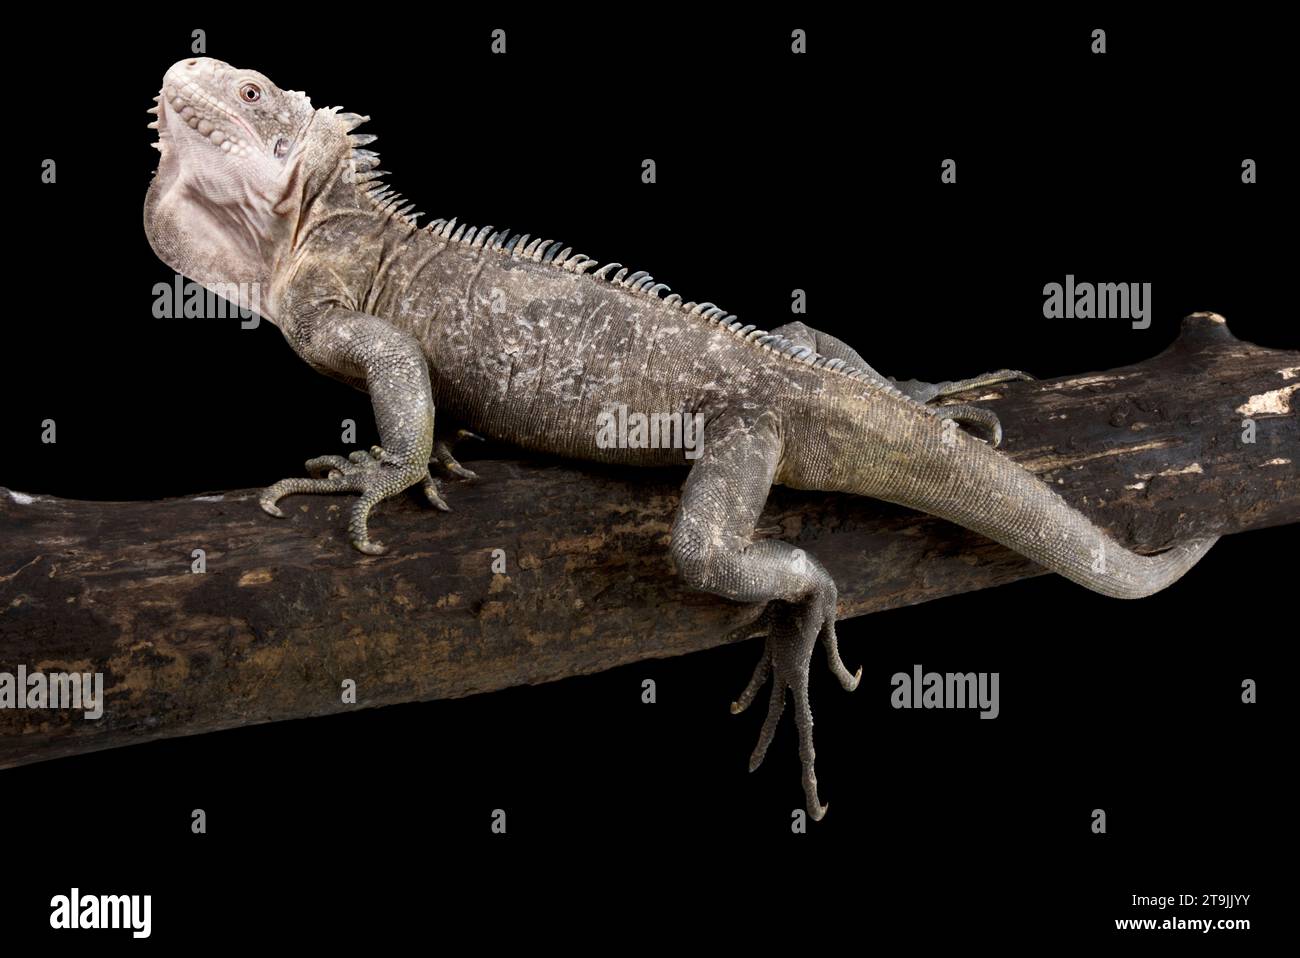 L'Iguane des petites Antilles (Iguana delicatissima) est une espèce de reptiles en danger critique d'extinction endémique à quelques îles Antilles restantes. Banque D'Images